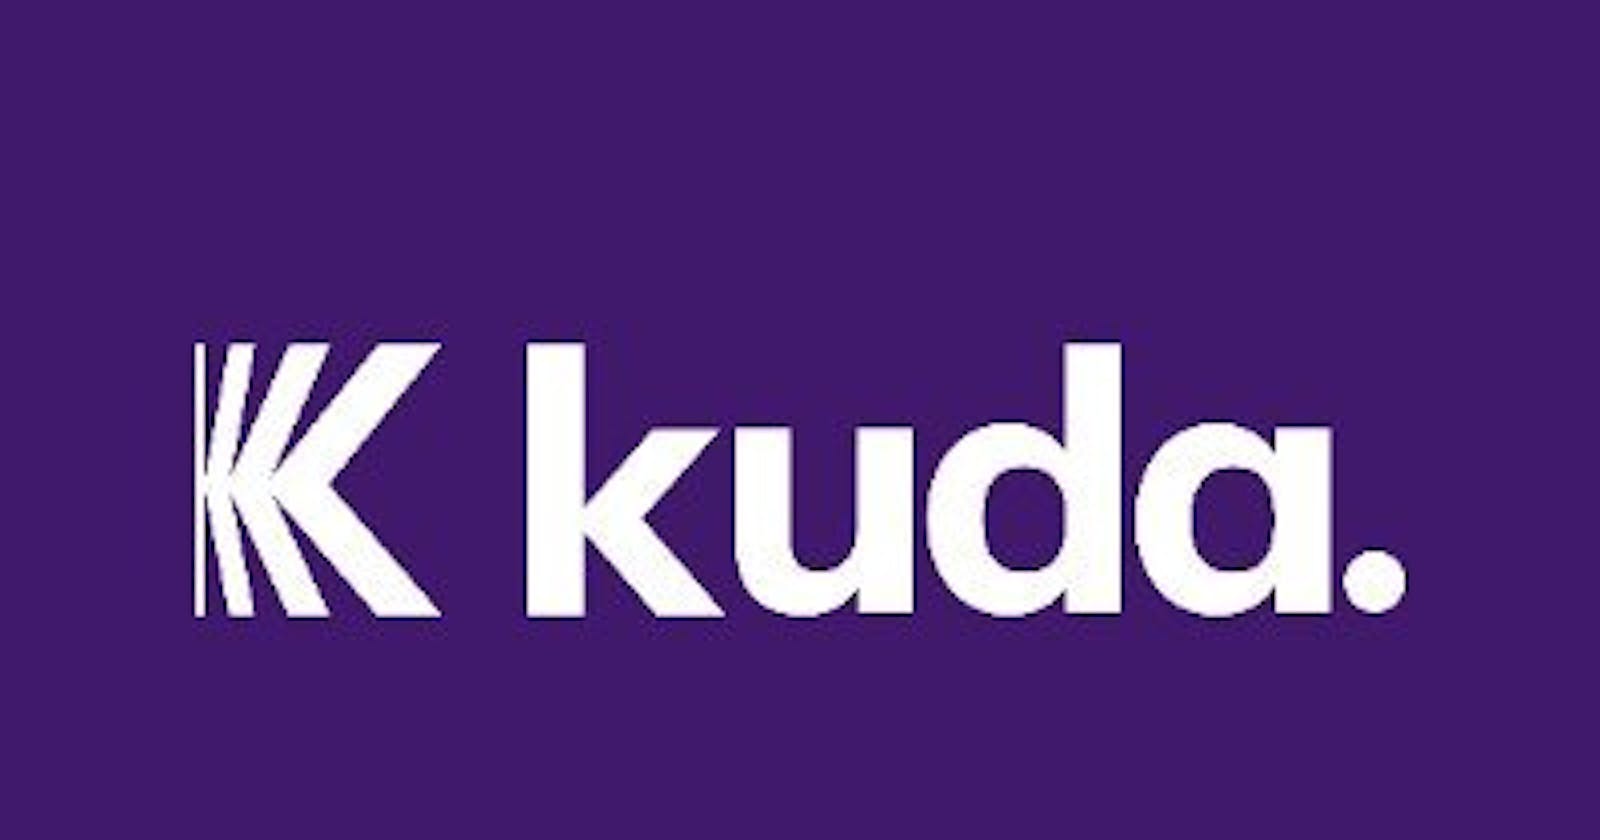 Digital Marketing Plan for KUDA (December)